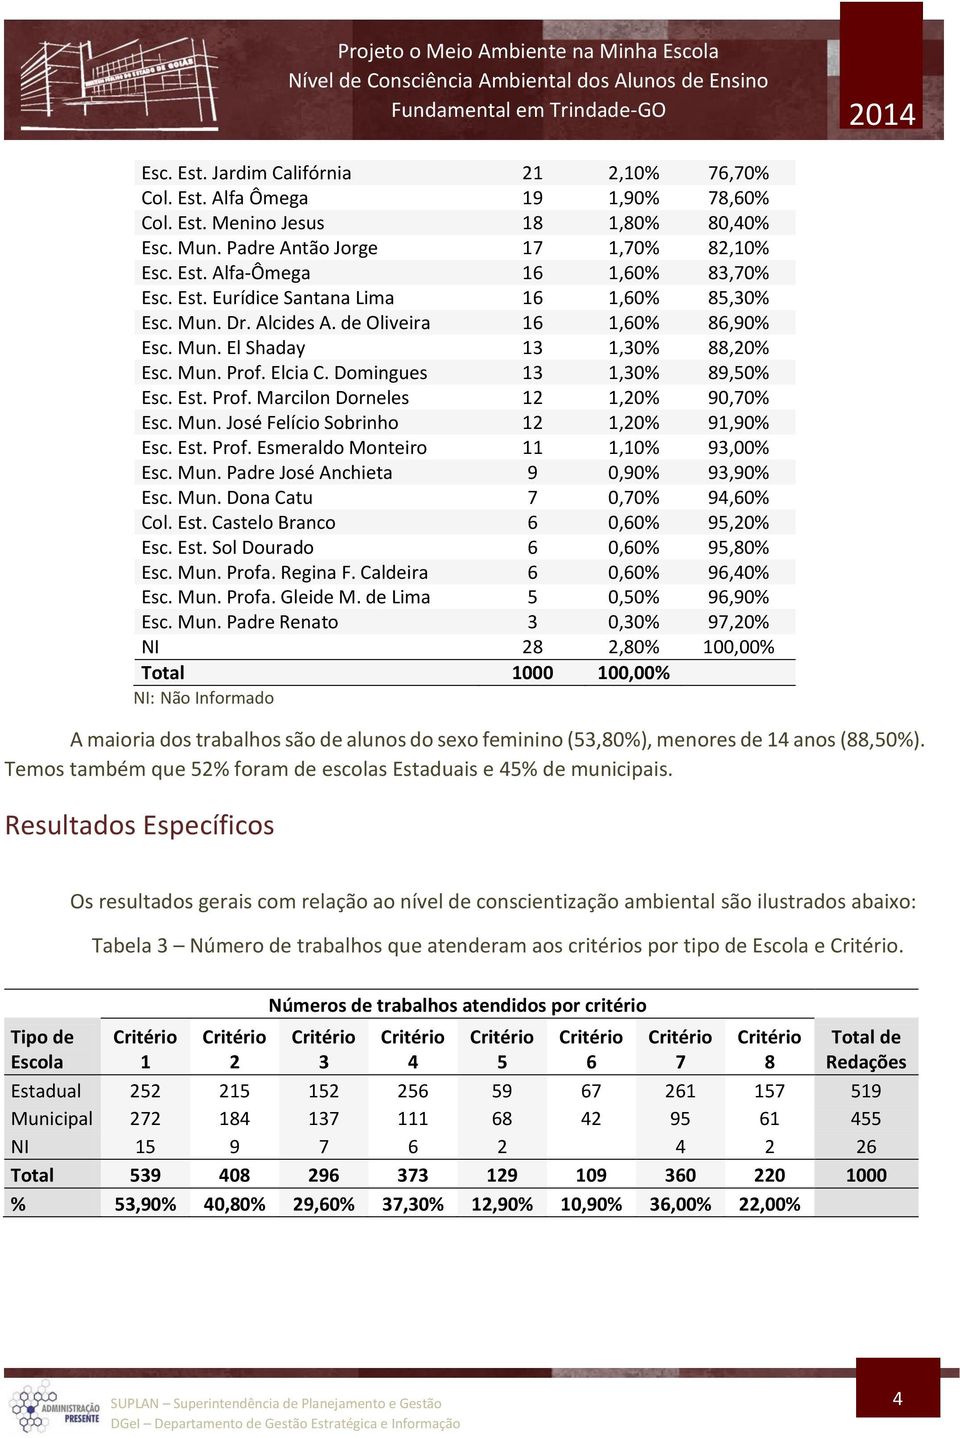 Mun. José Felício Sobrinho 12 1,20% 91,90% Esc. Est. Prof. Esmeraldo Monteiro 11 1,10% 93,00% Esc. Mun. Padre José Anchieta 9 0,90% 93,90% Esc. Mun. Dona Catu 7 0,70% 94,60% Col. Est. Castelo Branco 6 0,60% 95,20% Esc.